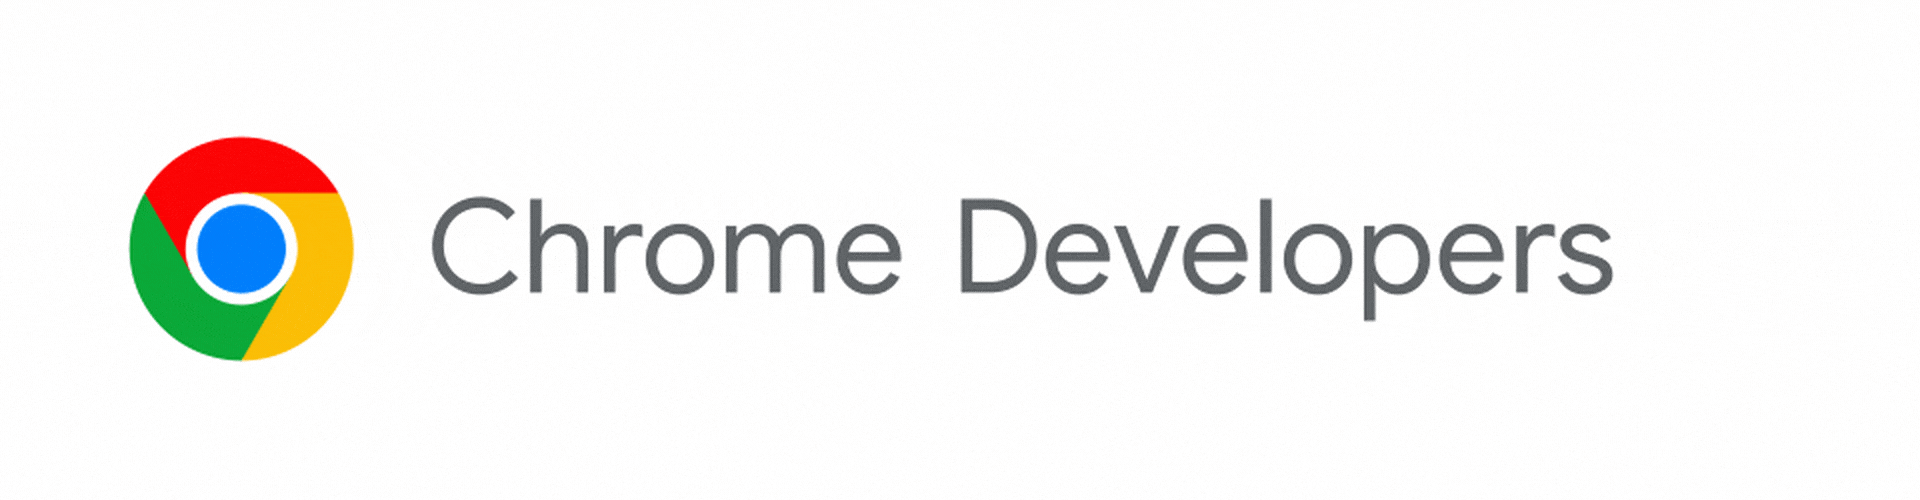 Логотип Chrome Developers трансформируется в Chrome для разработчиков.